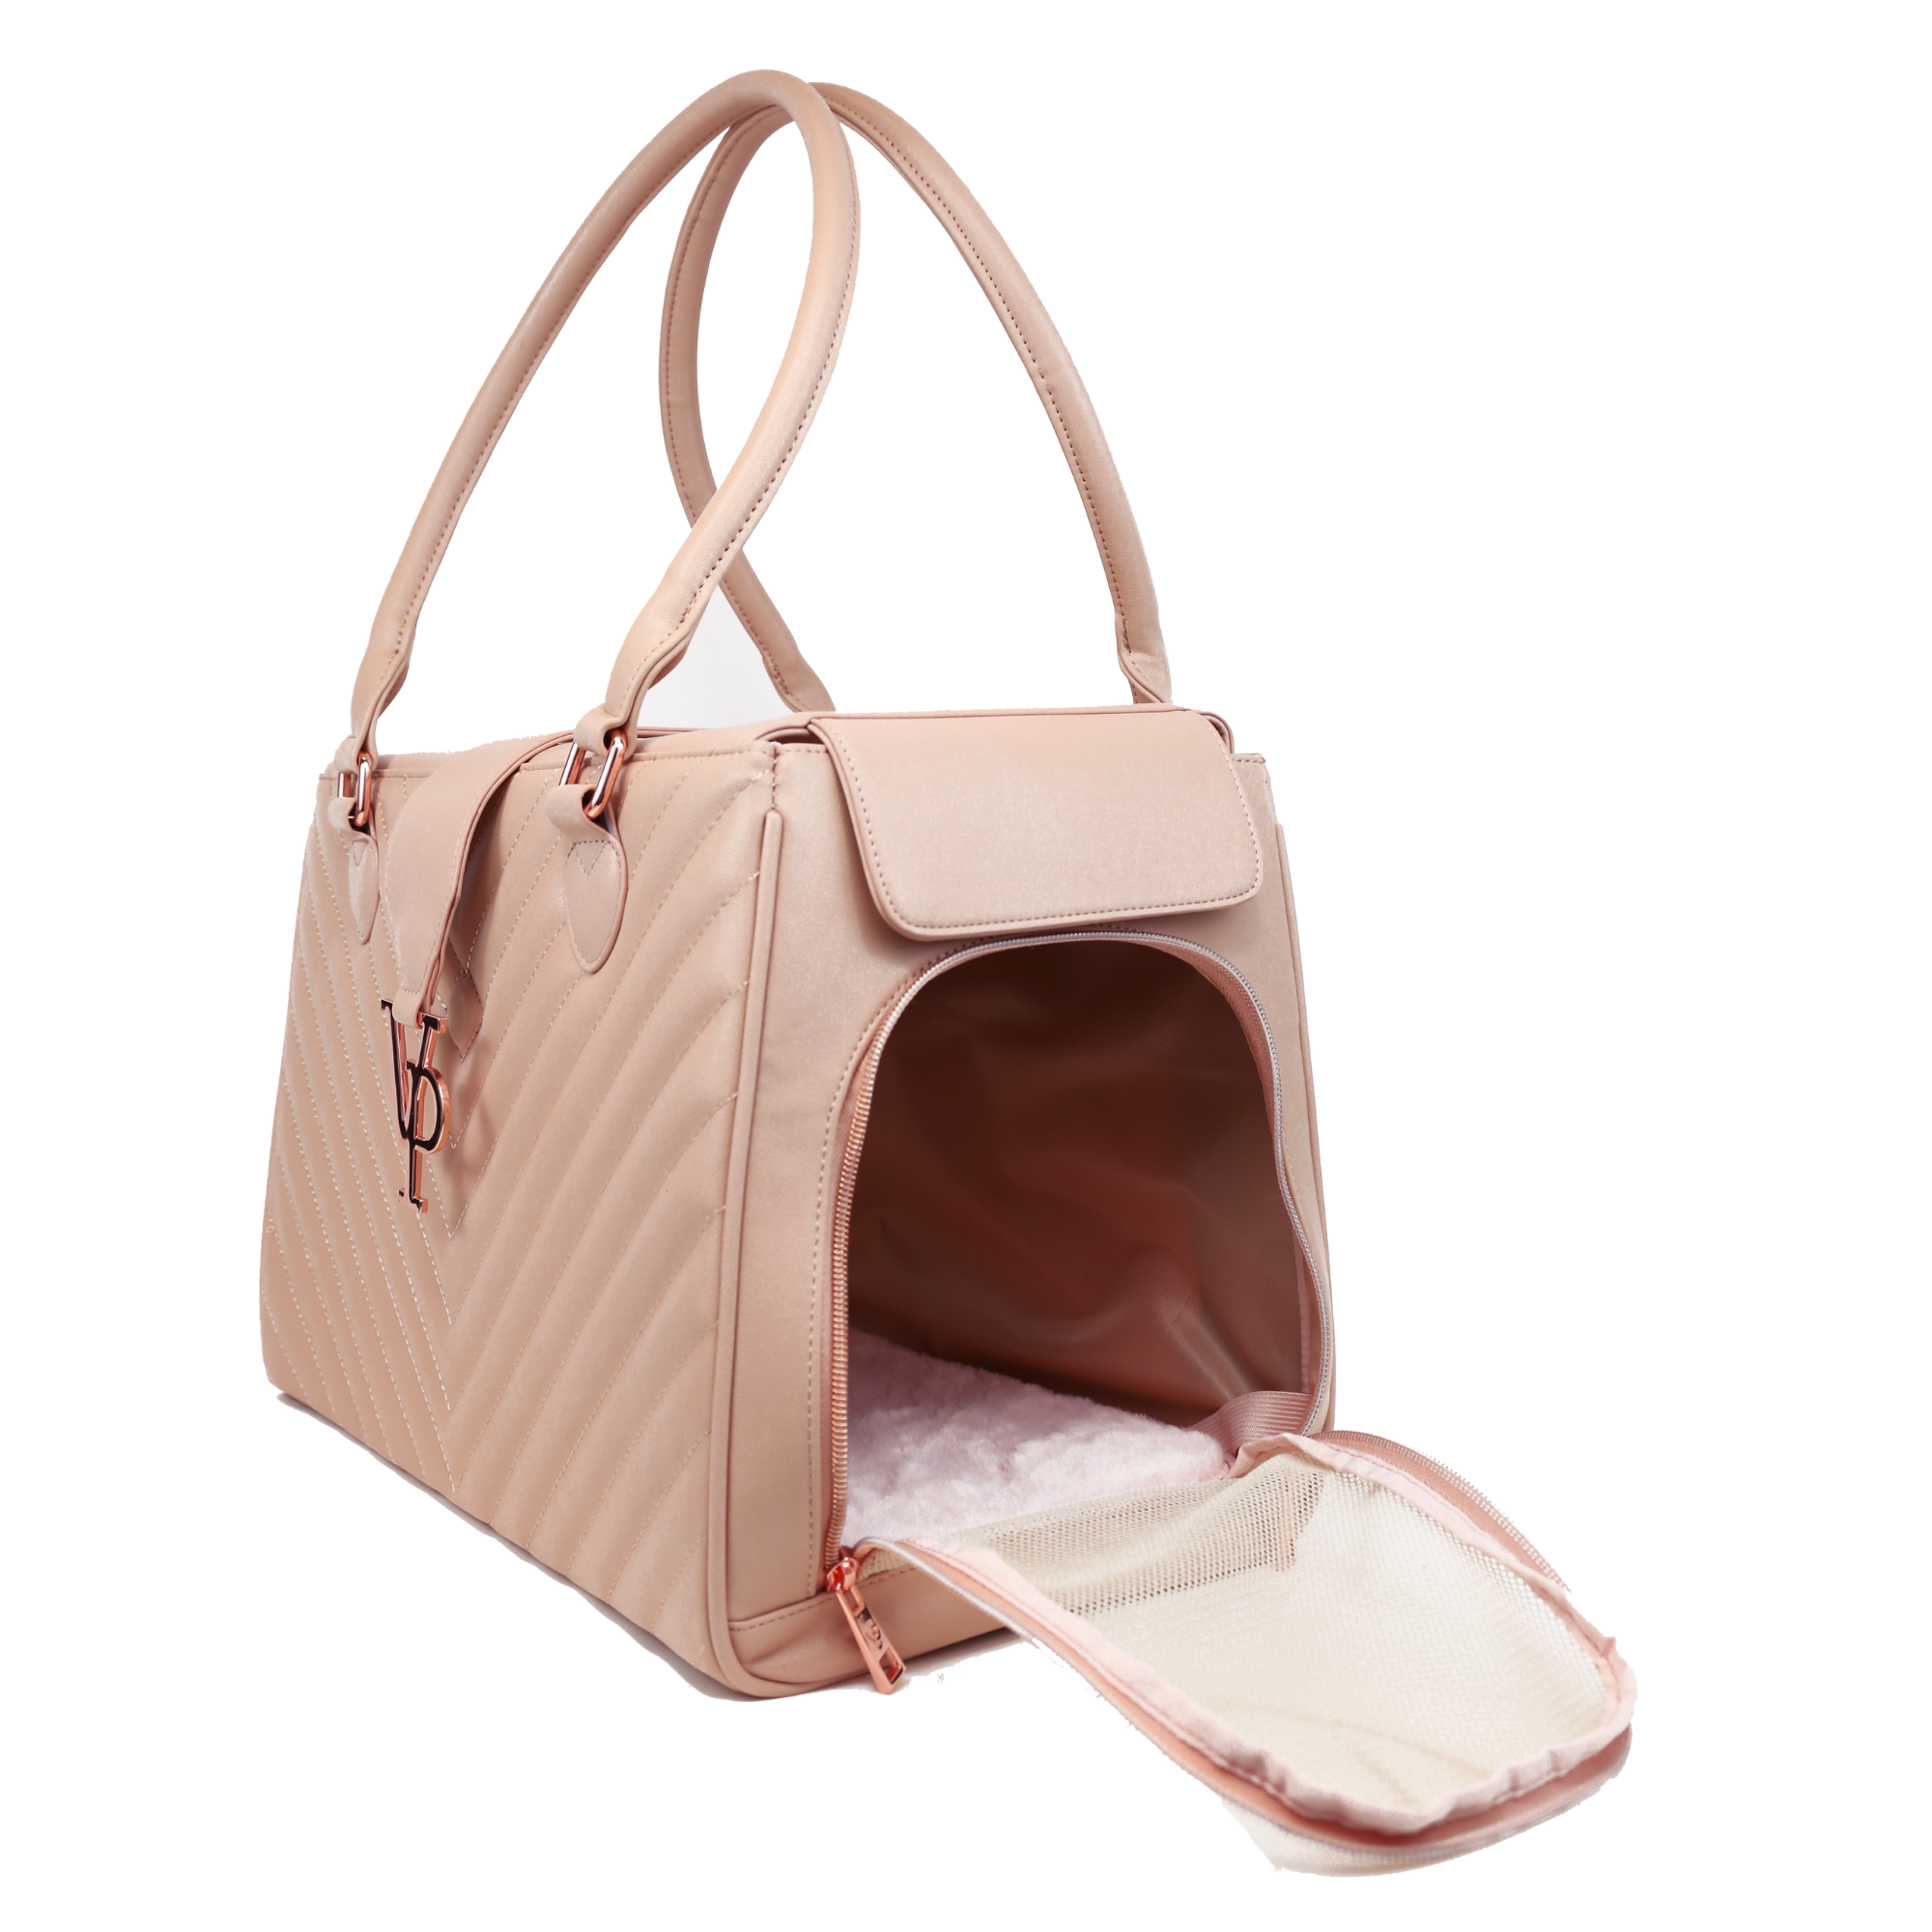 Dogline Pet Carrier Bag - Pink